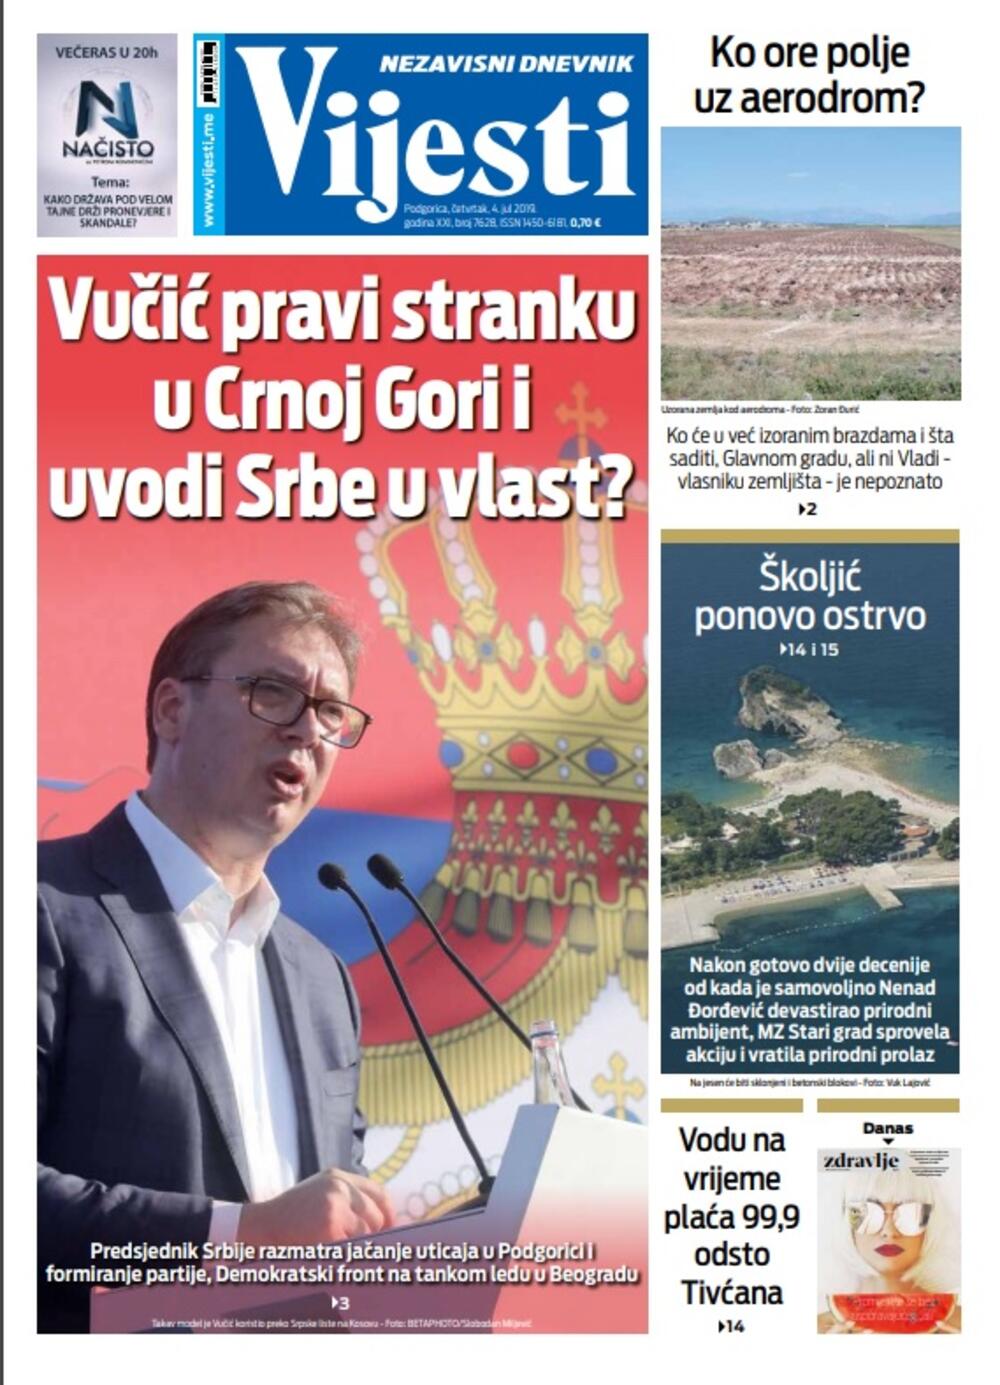 Naslovna strana "Vijesti" 4.7., Foto: Vijesti